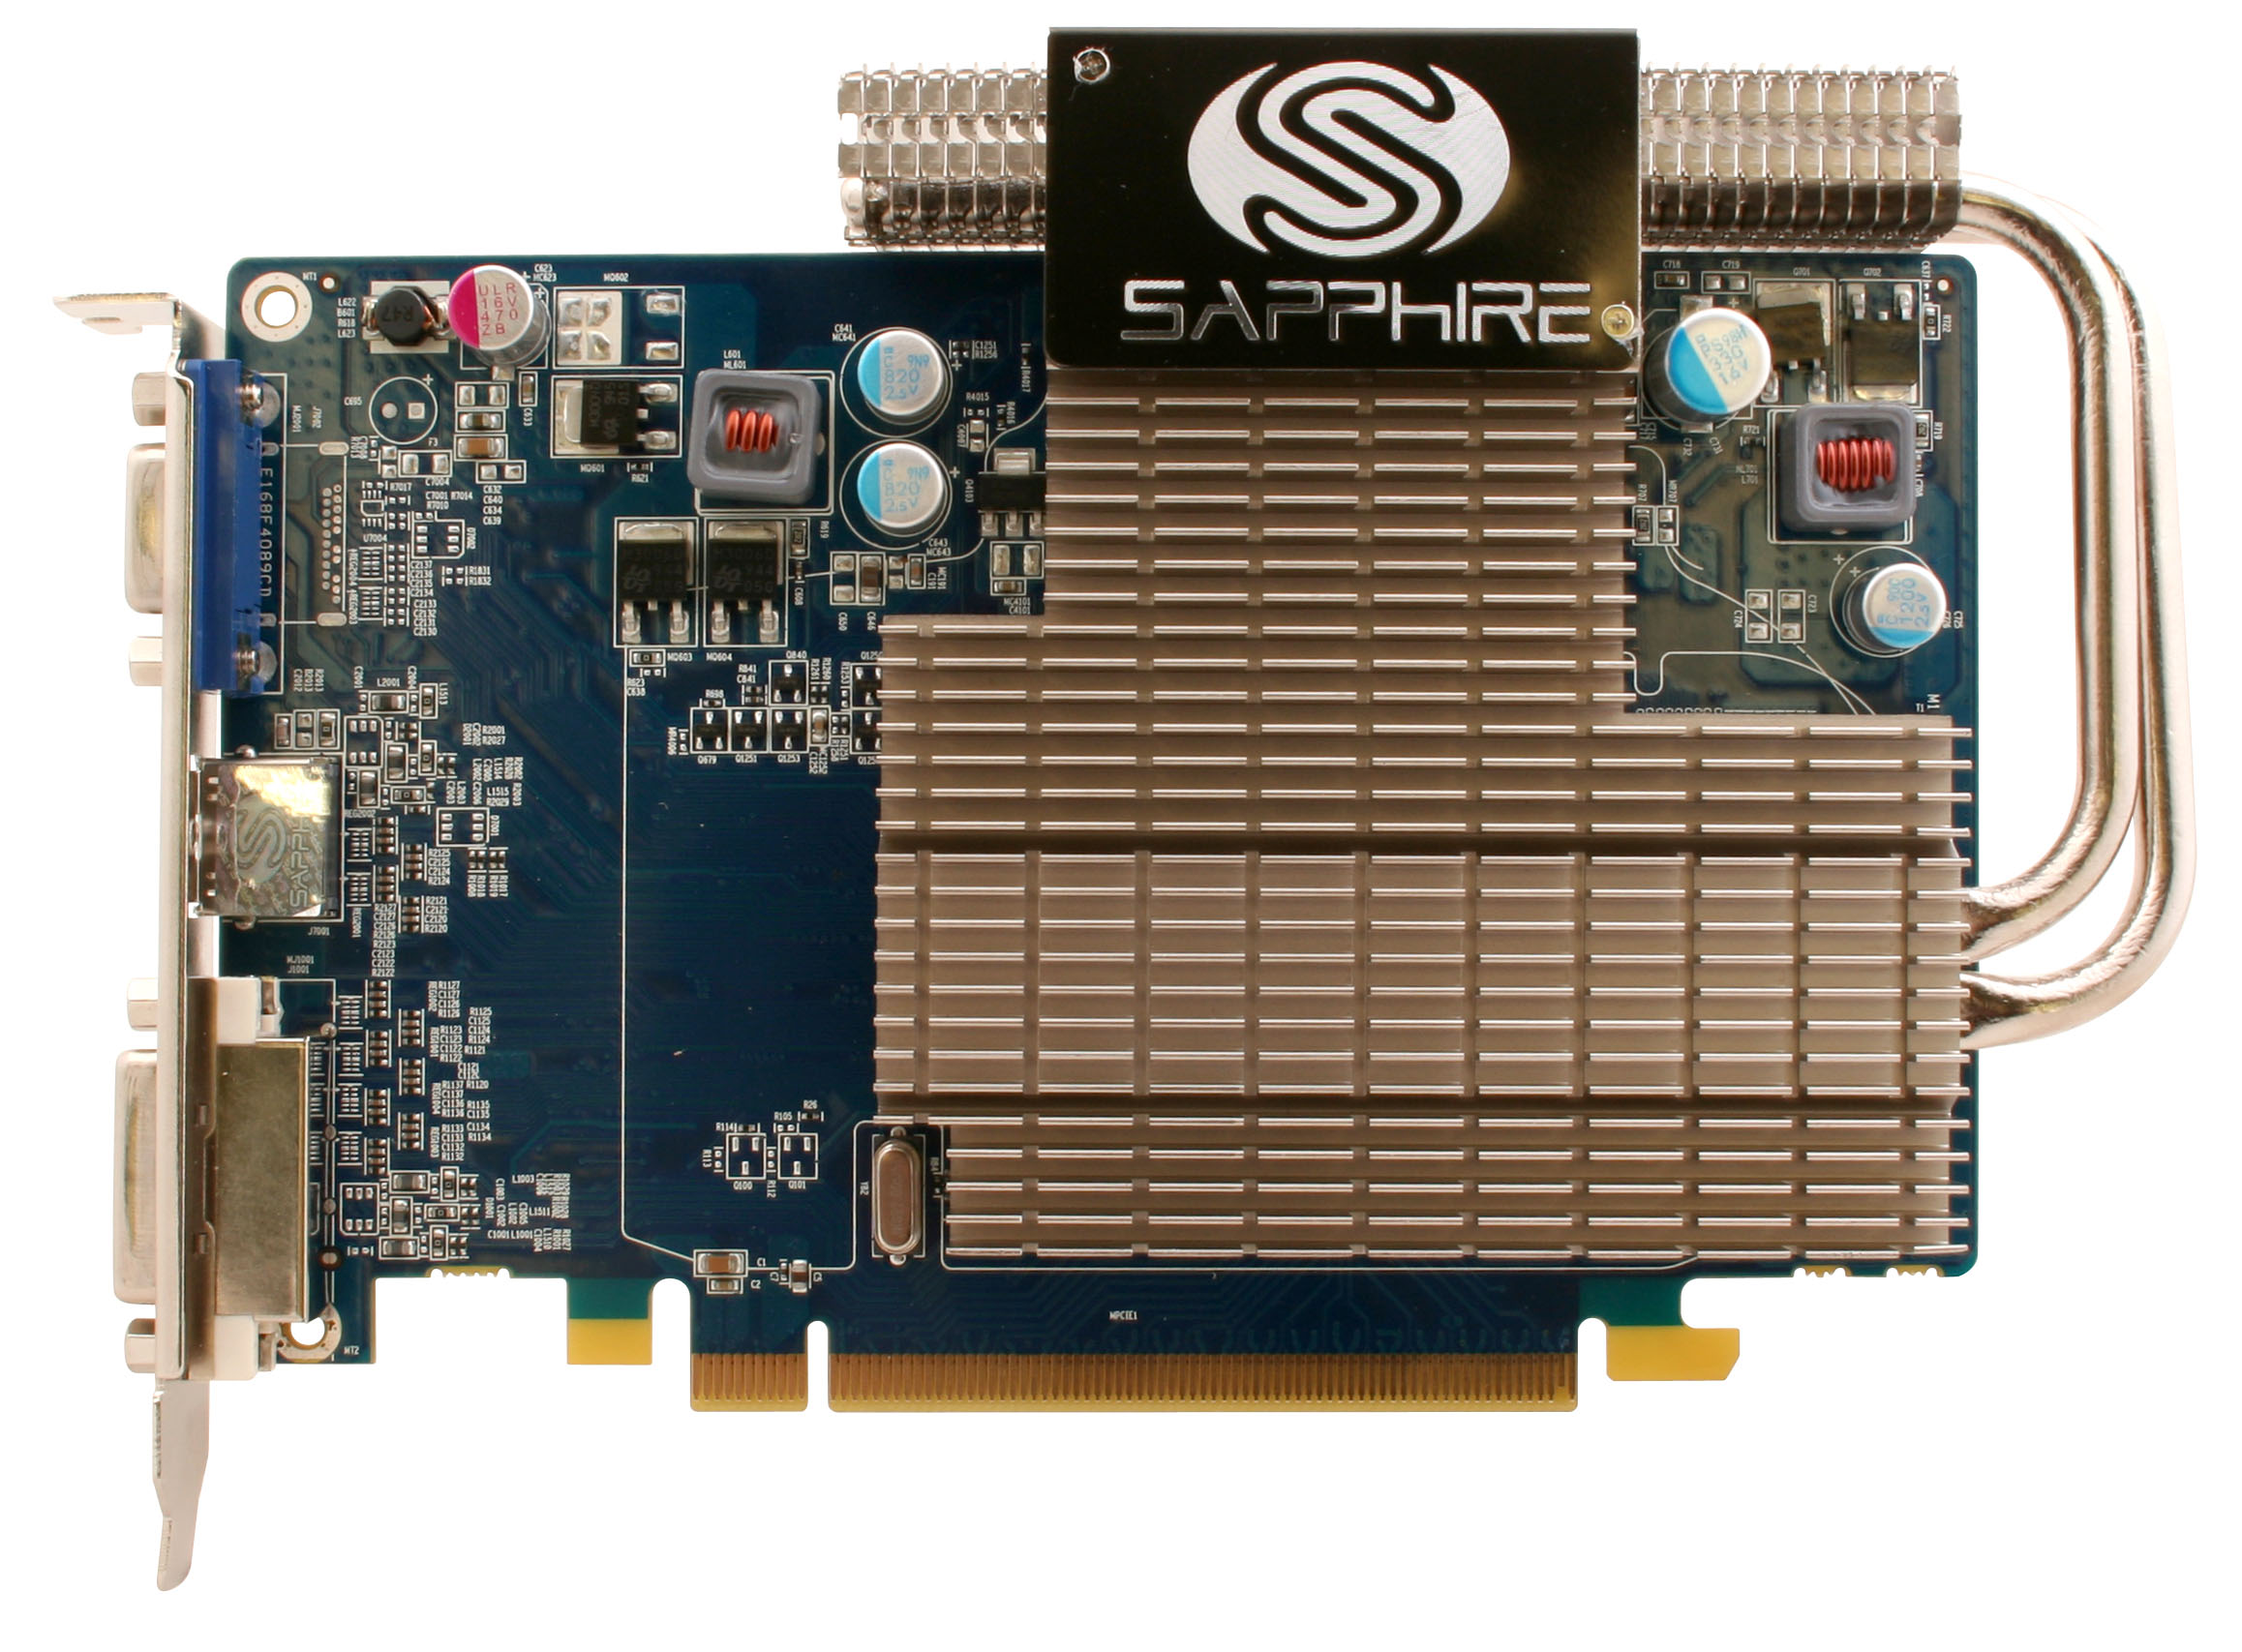 Immagine pubblicata in relazione al seguente contenuto: SAPPHIRE lancia la video card Radeon HD5550 ULTIMATE | Nome immagine: news13068_3.jpg